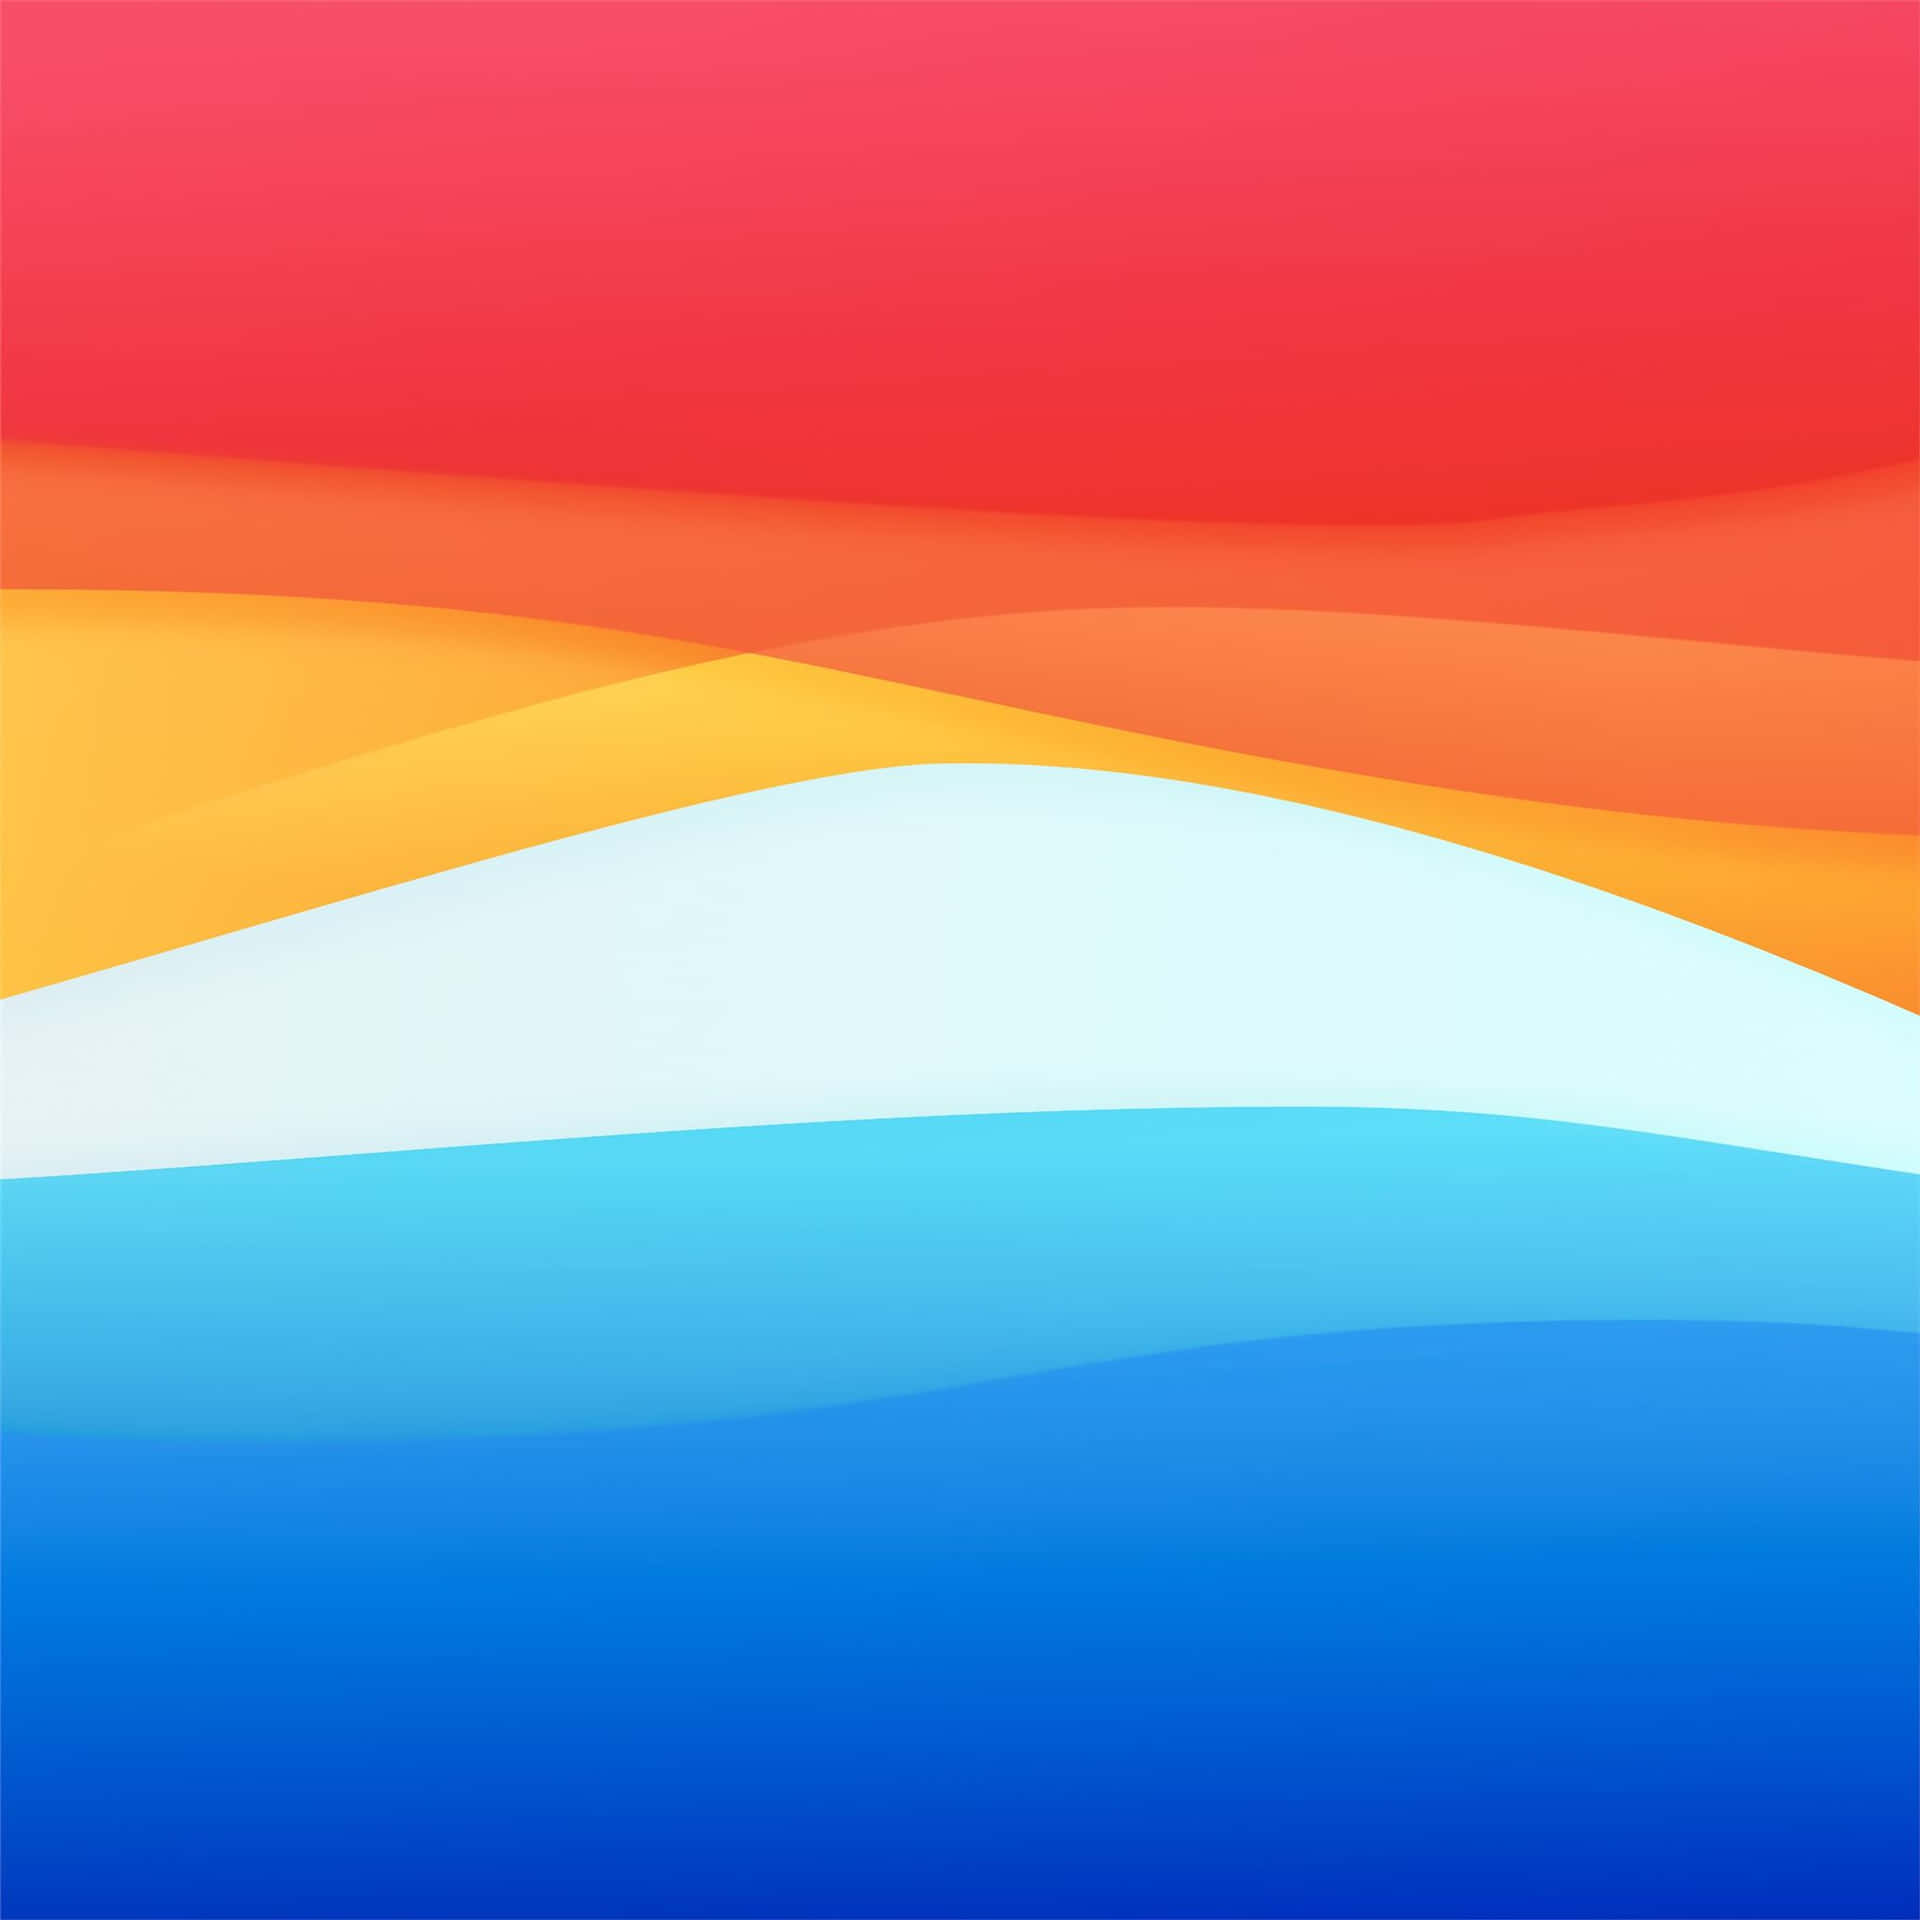 Et levende illustration af det slående kontrast mellem orange og blå. Wallpaper